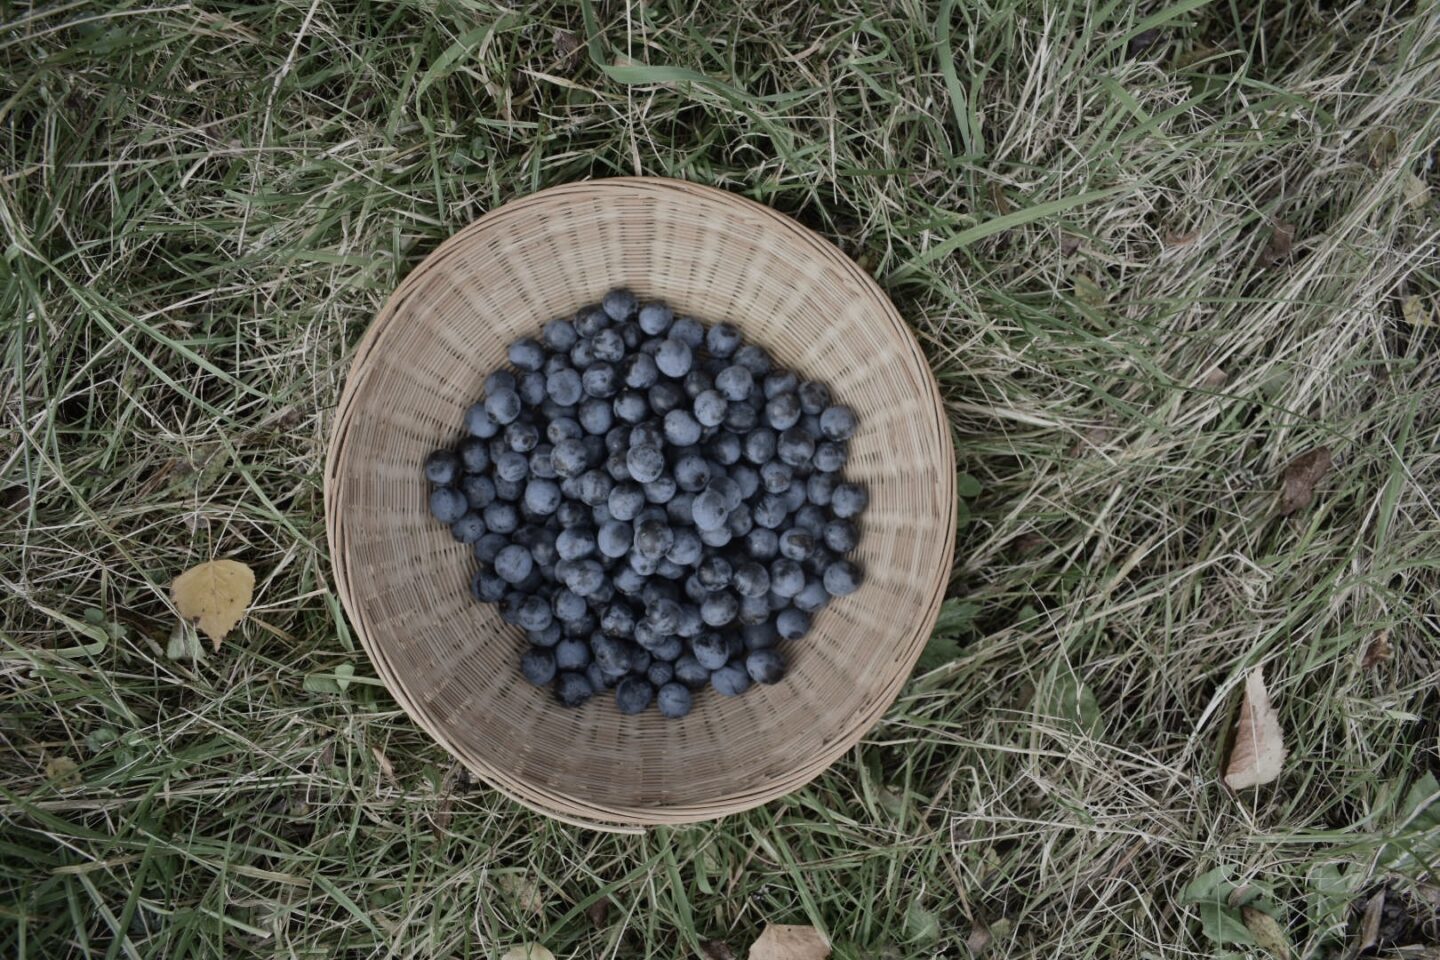 Sloe berries in a basket